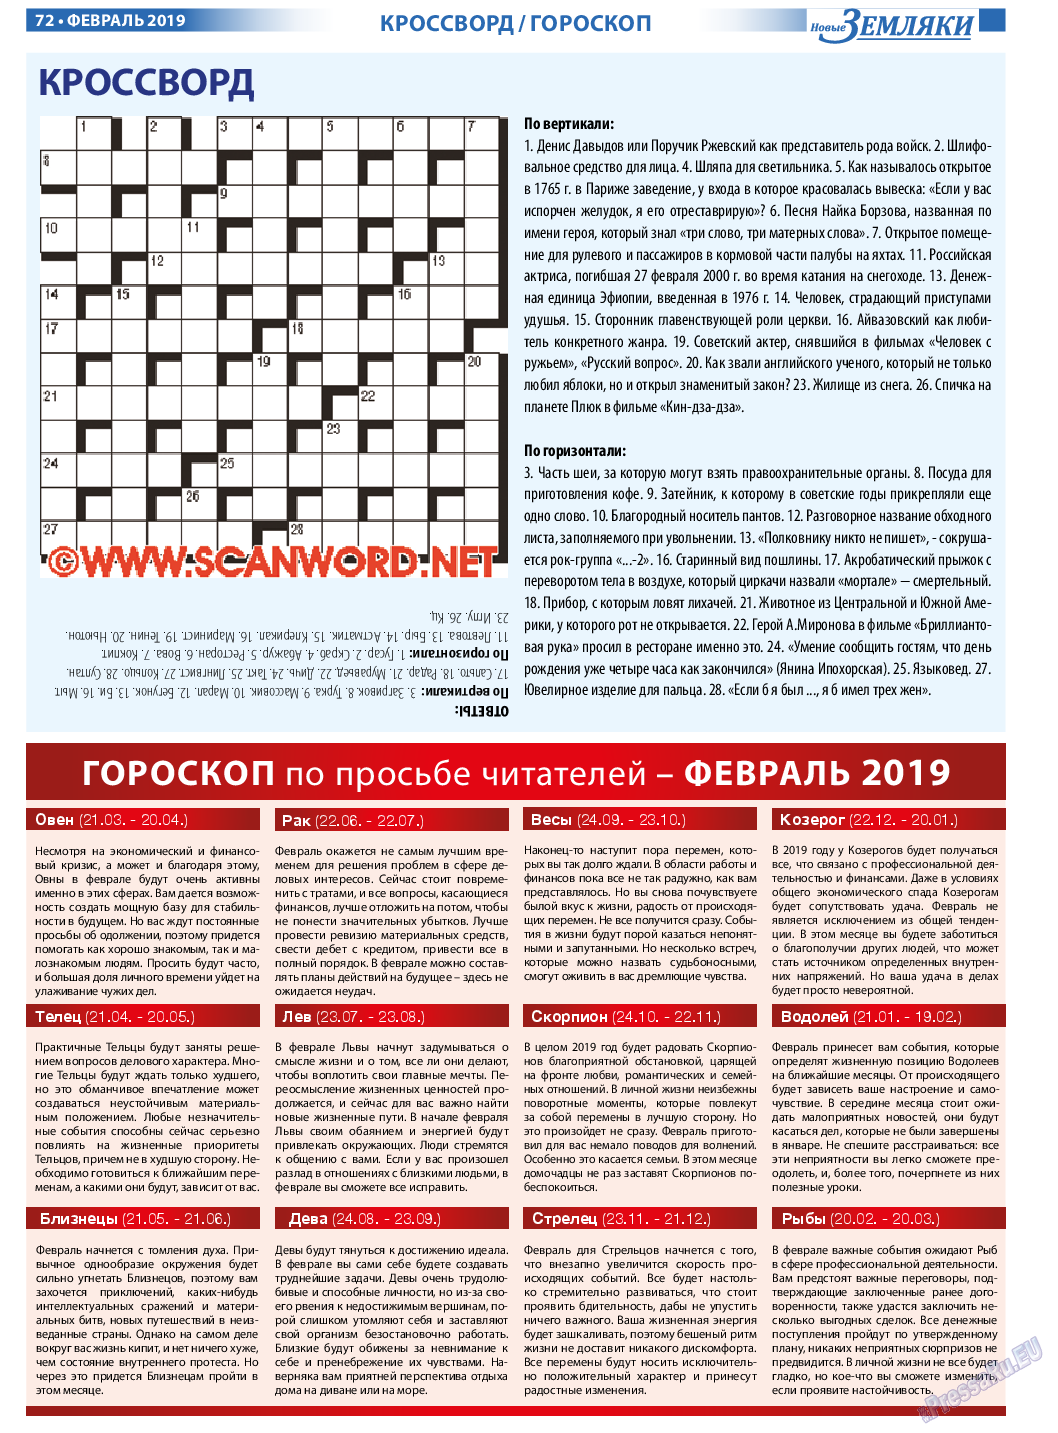 Новые Земляки, газета. 2019 №2 стр.72